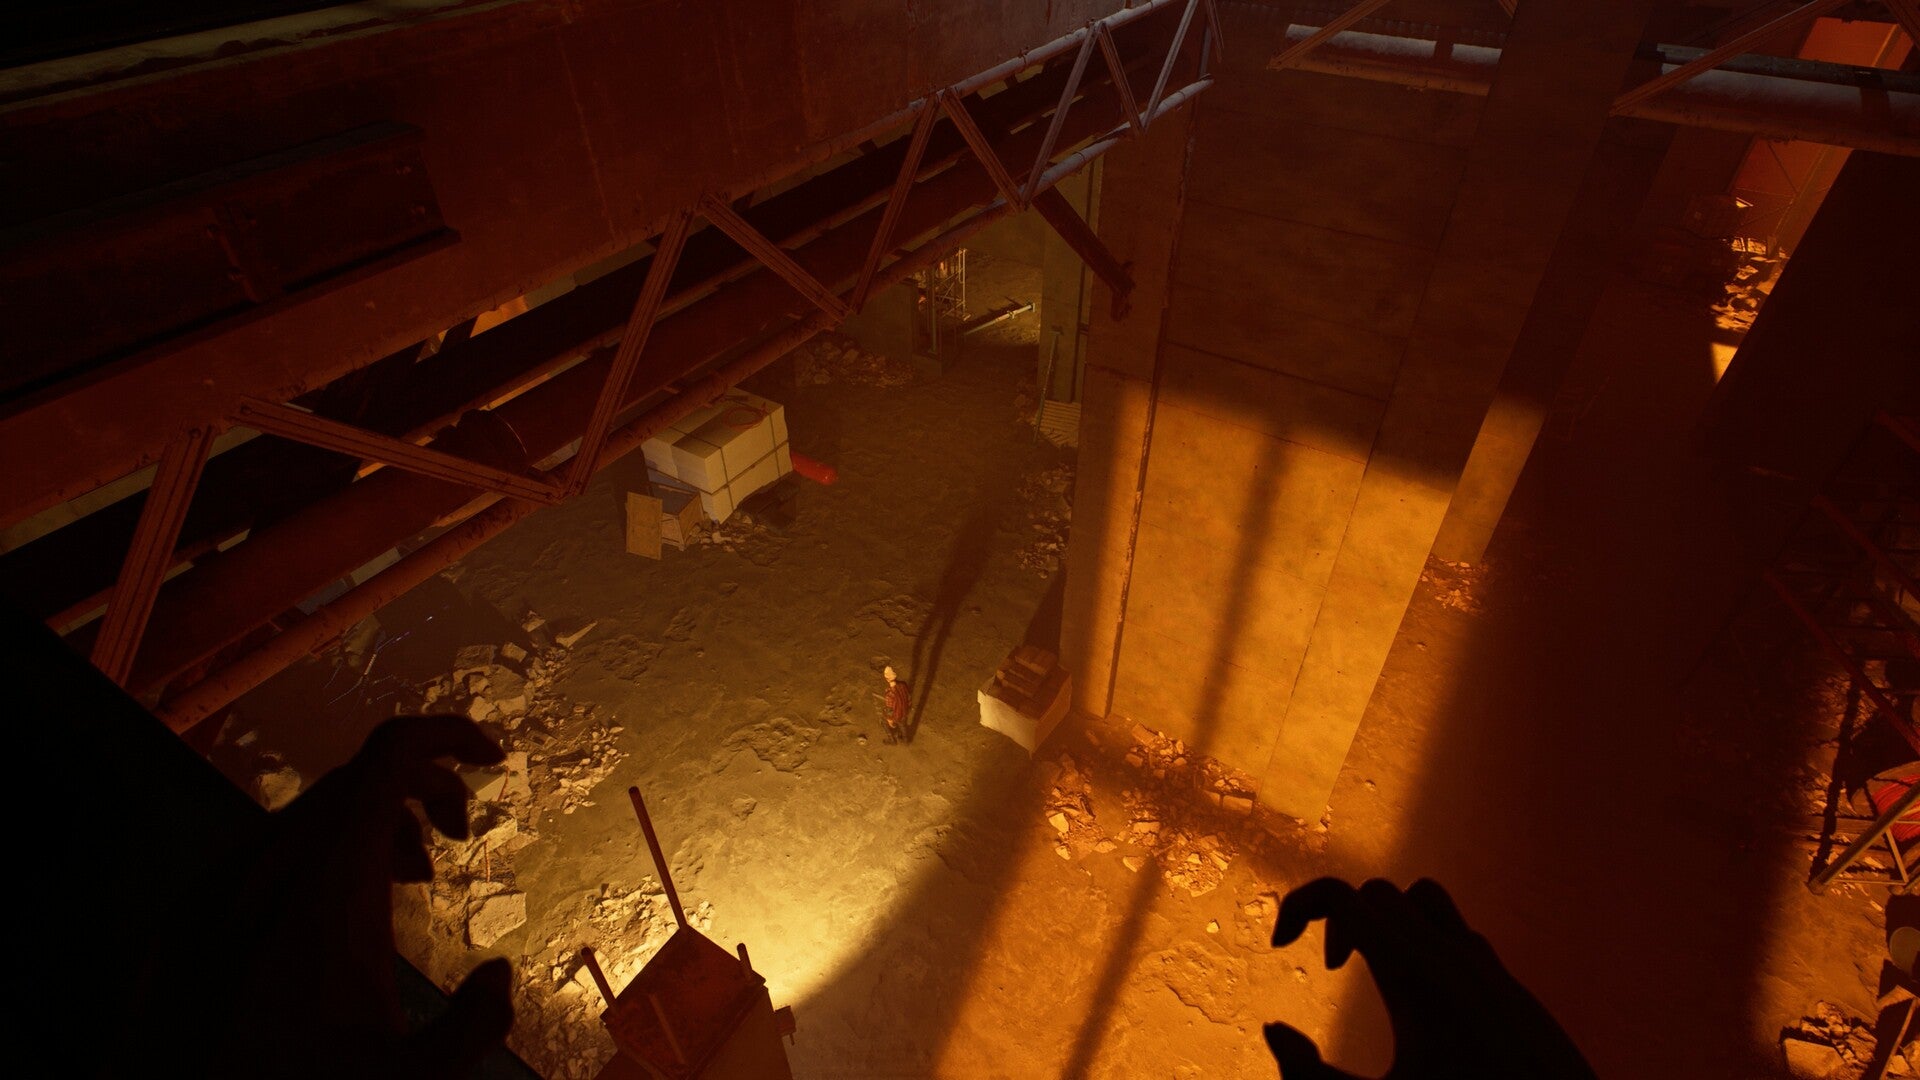 视角：你是一名吸血鬼站在一幢建筑的黑暗屋檐上，俯视着下面的孤独人影。猎物。